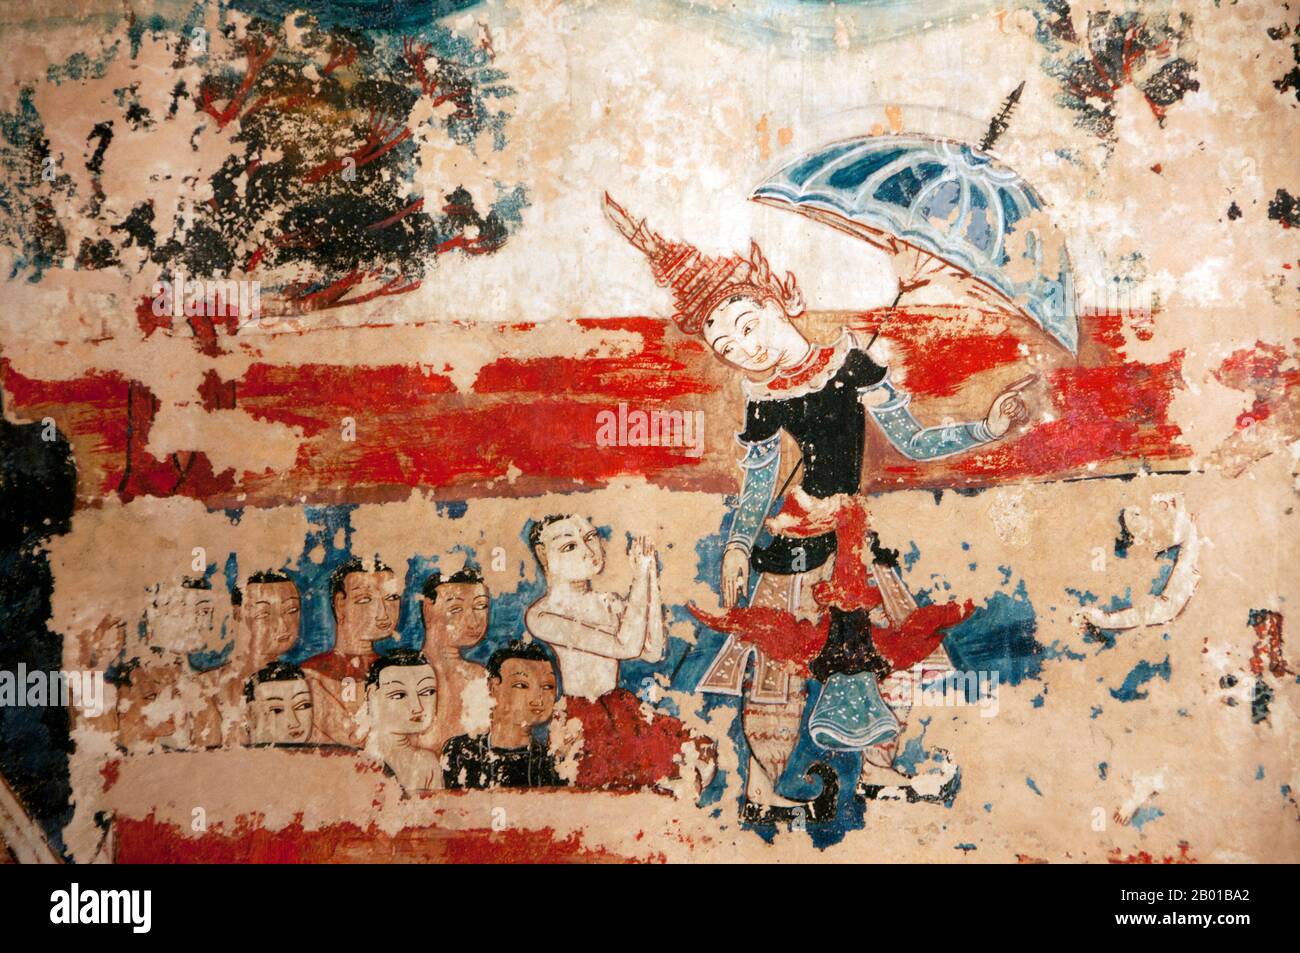 Thailand: Prinz Siddhartha in burmesischer Kleidung, nördliches Wandgemälde, Wat Buak Khrok Luang, Chiang Mai. Siddhartha Gautama war eine spirituelle Lehrerin aus dem alten Indien, die den Buddhismus gründete. Der Zeitpunkt seiner Geburt und Tod sind ungewiss: Die meisten frühen 20.-Jahrhundert-Historiker datierten sein Leben als c. 563 BCE bis 483 BCE, aber neuere Meinung datiert seinen Tod auf zwischen 486 und 483 BCE oder, nach einigen, zwischen 411 und 400 BCE. Wat Buak Khrok Luang, in Ban Buak Khrok Luang Moo 1, Chiang Mai – Sankamphaeng Road, ist ein kleiner und typischer buddhistischer Tempel im Norden Thailands. Stockfoto